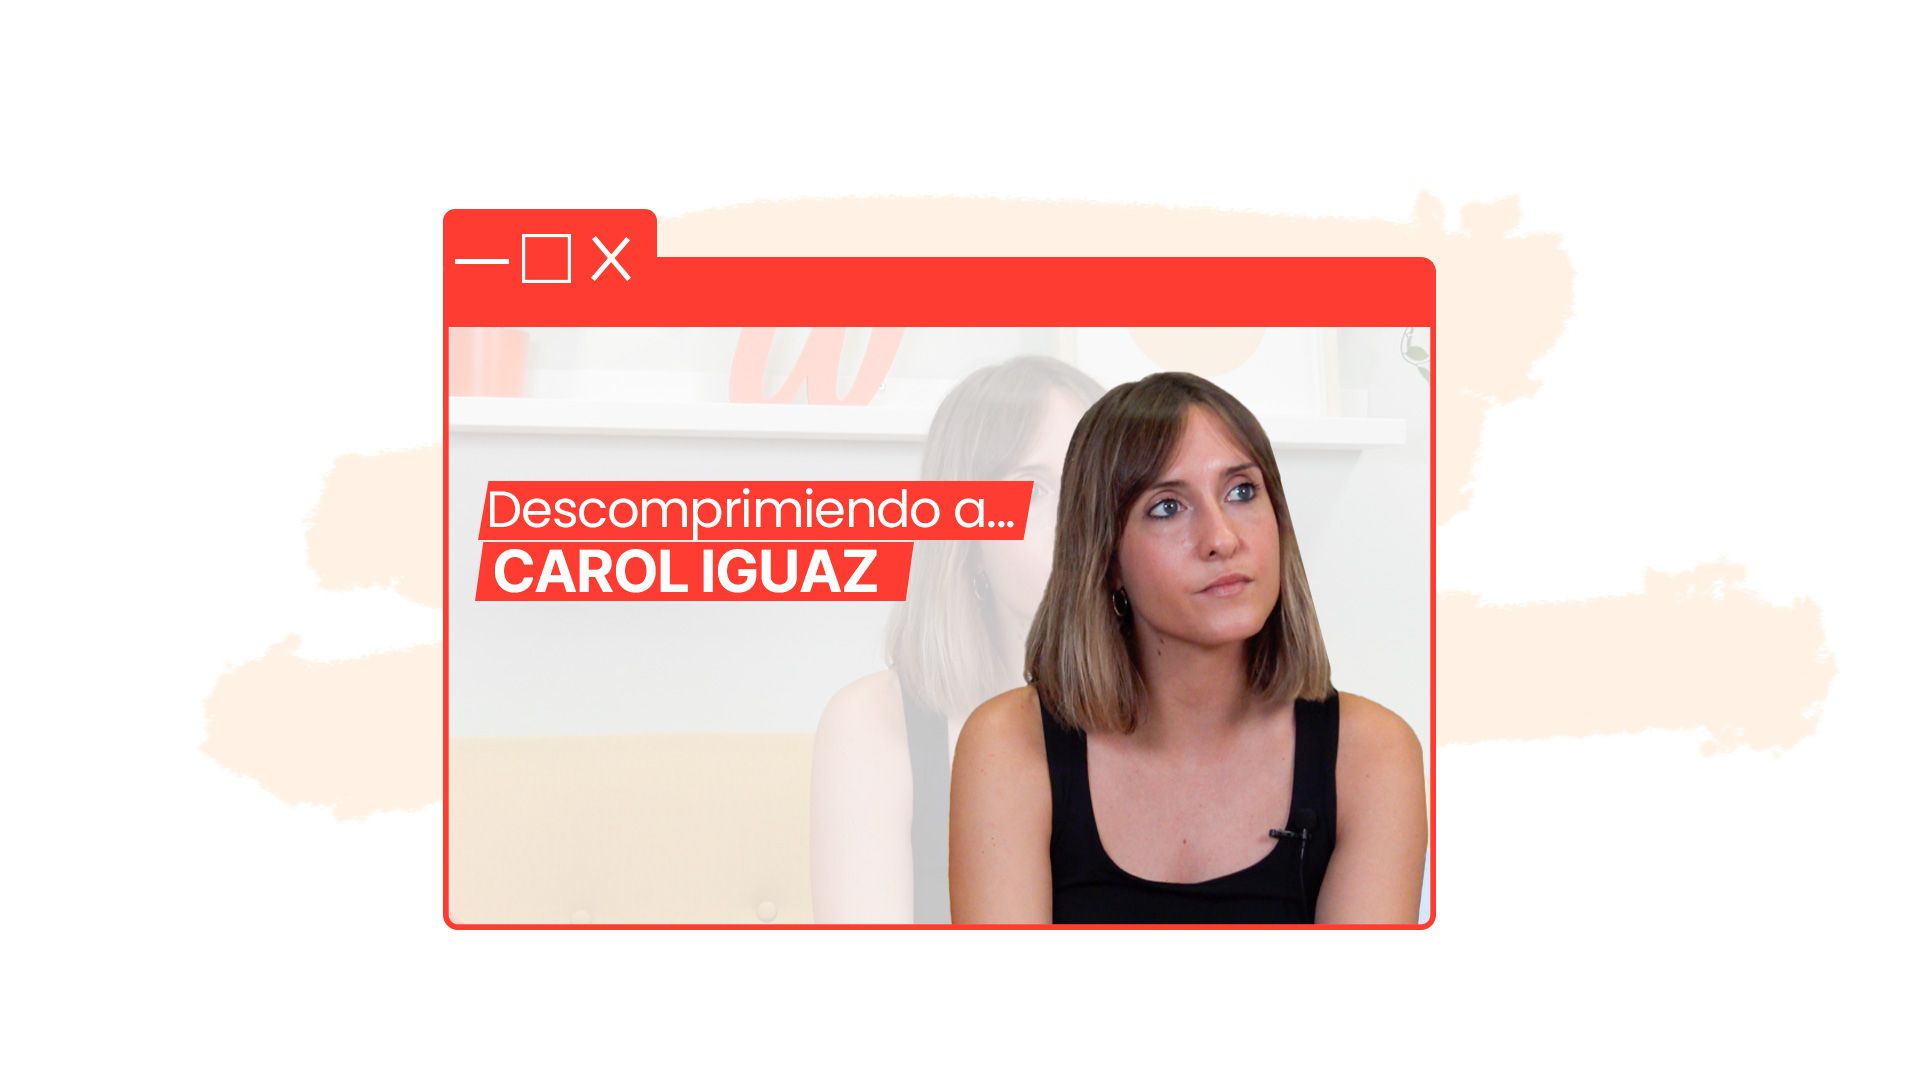 entrevista carolina iguaz Carolina Iguaz: “El Growth Manager tiene como objetivo posicionar un producto o servicio de una empresa en el entorno digital”